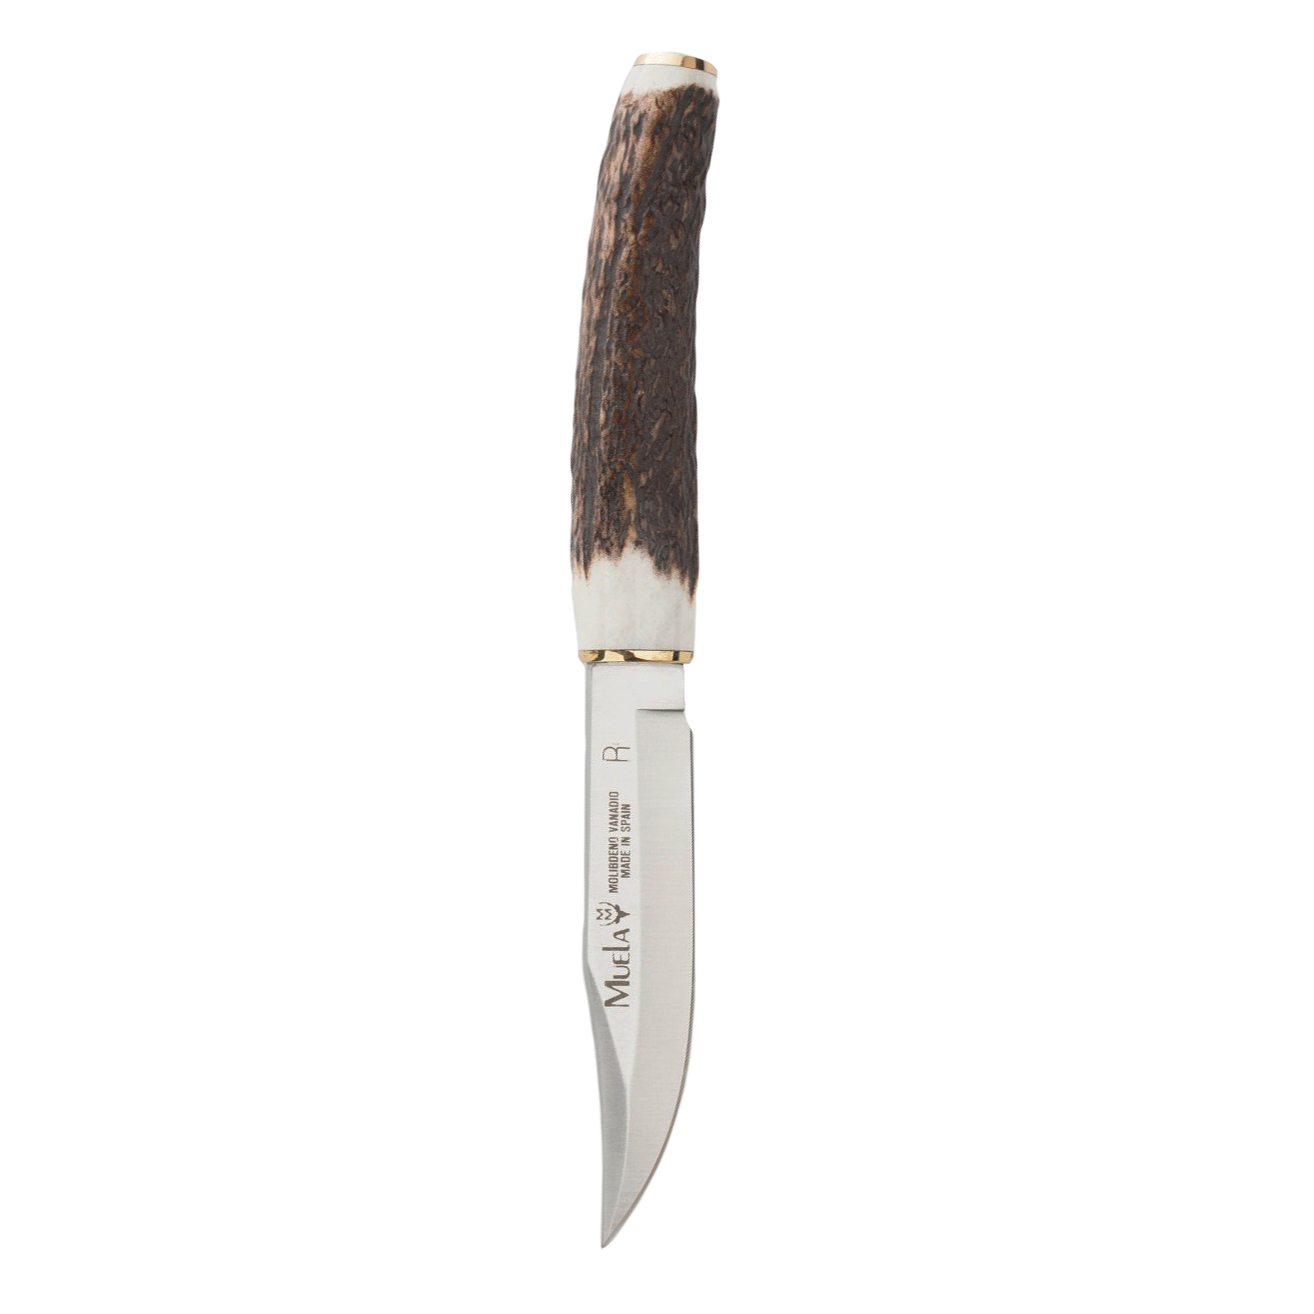 Нож с рукояткой из рога: сделать рукоять из рога лося, оленя изготовление своими руками